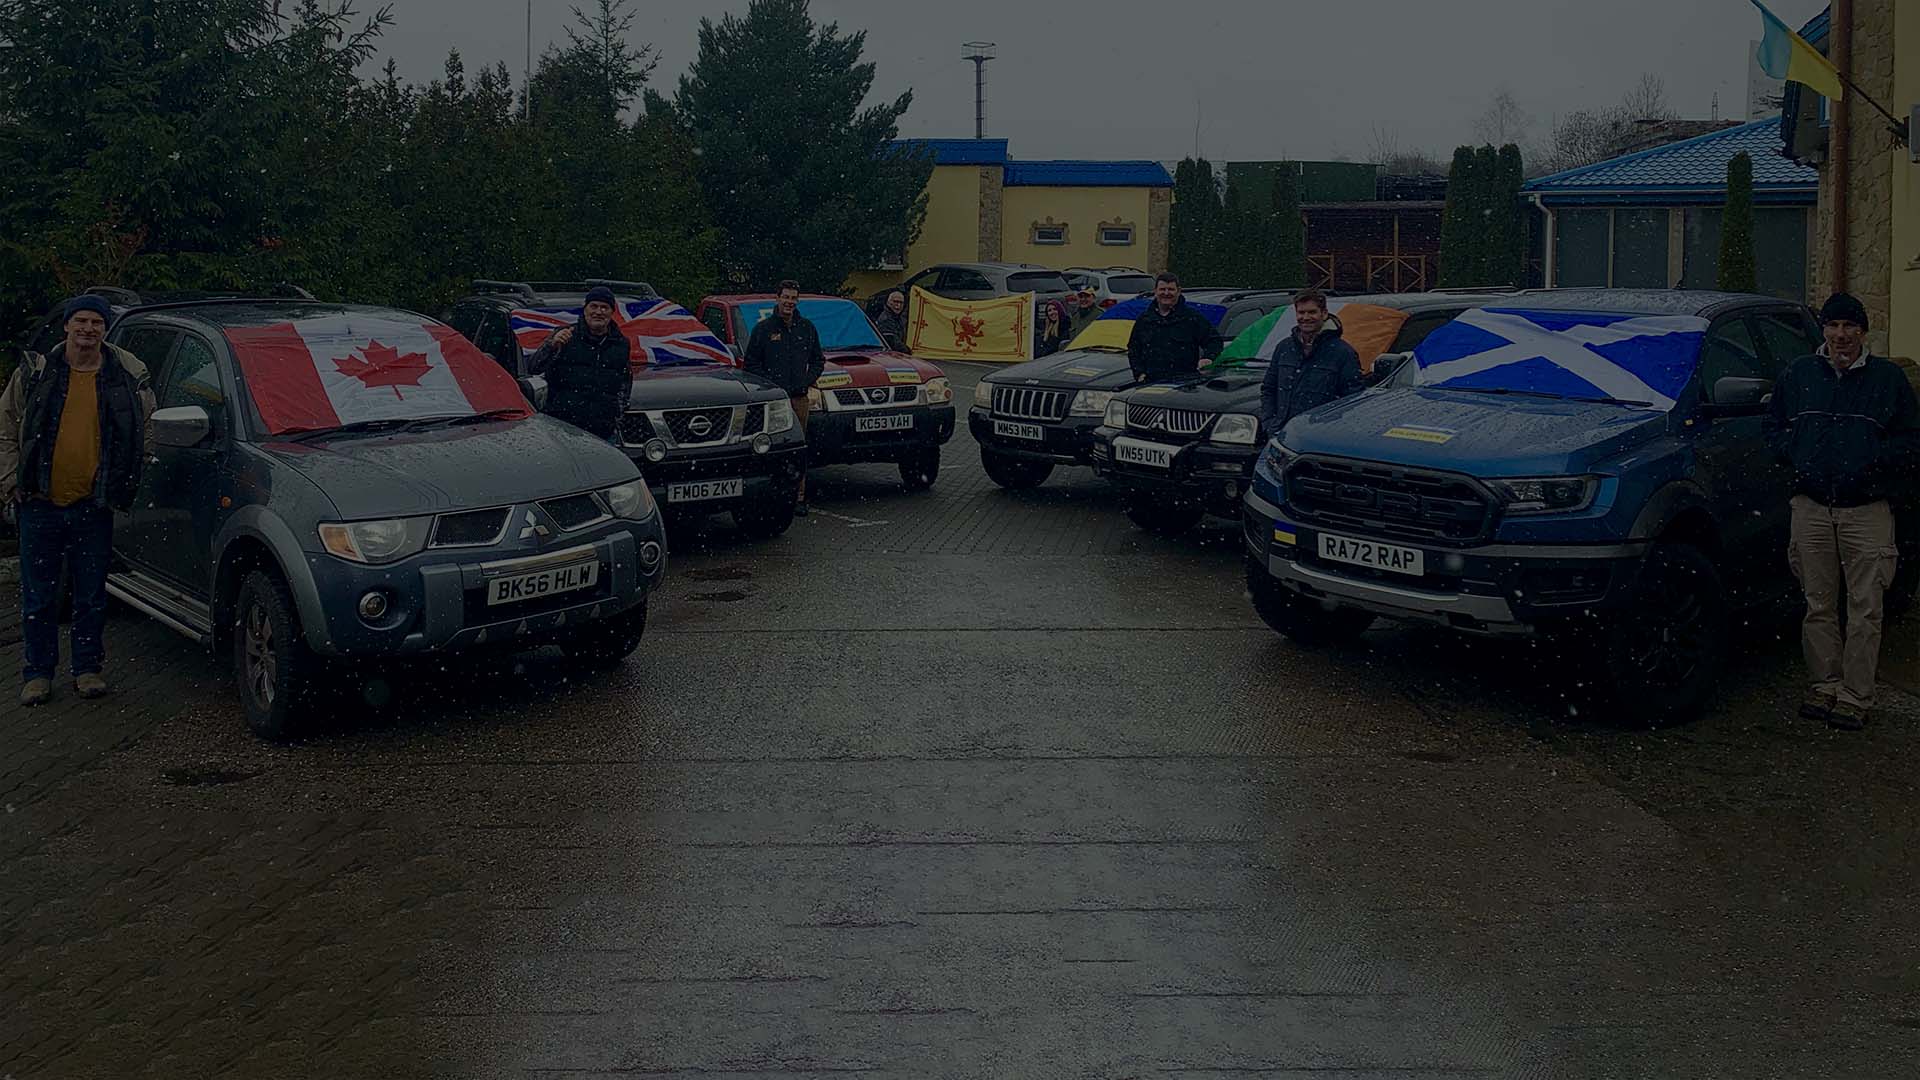 Une photo lors d'une journée éclatante avec des bénévoles venant de différents pays européens avec les voitures données.